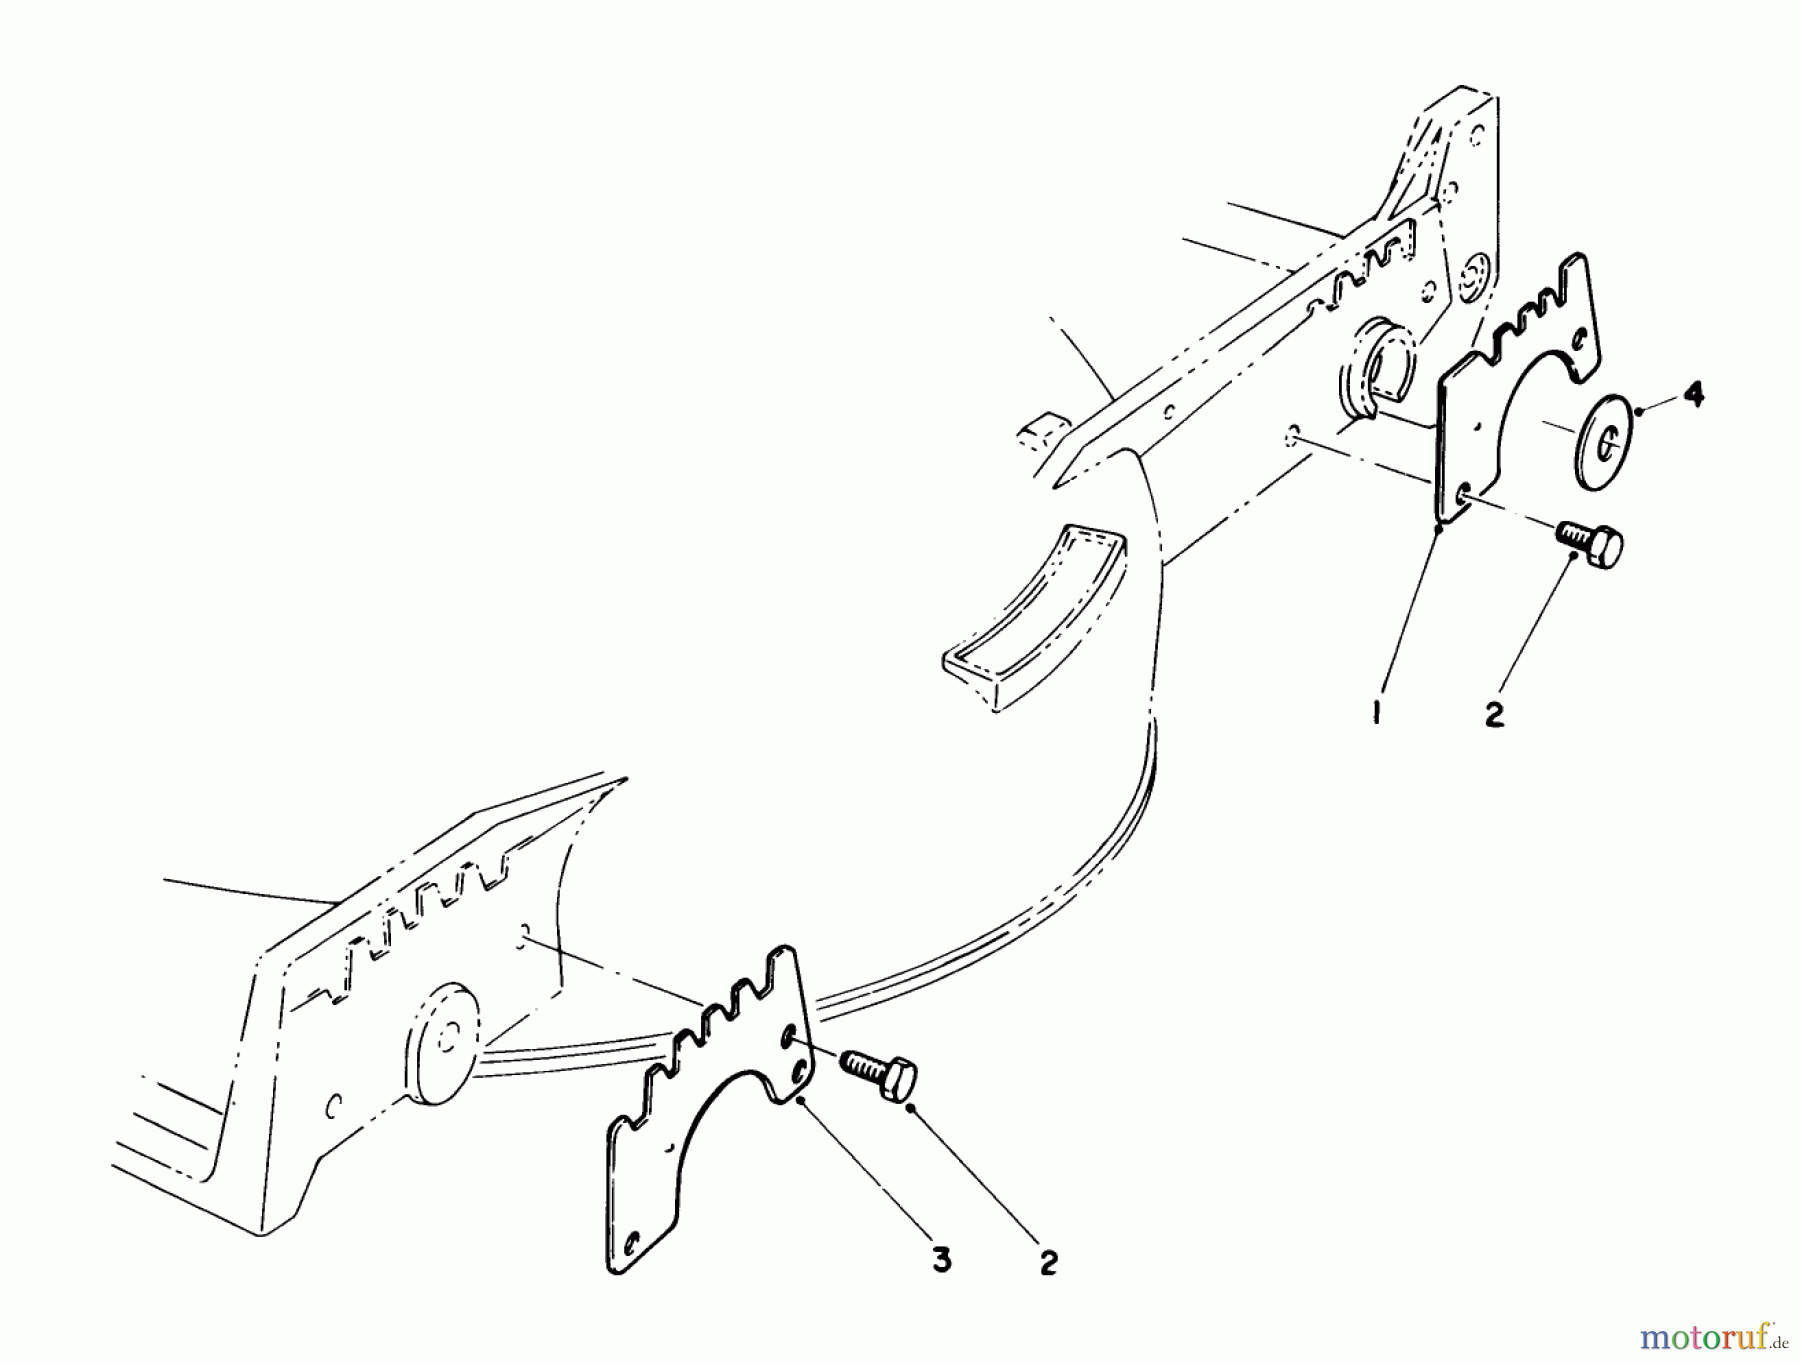  Toro Neu Mowers, Walk-Behind Seite 1 20581 - Toro Lawnmower, 1988 (8000001-8999999) WEAR PLATE KIT NO. 49-4080 (OPTIONAL)